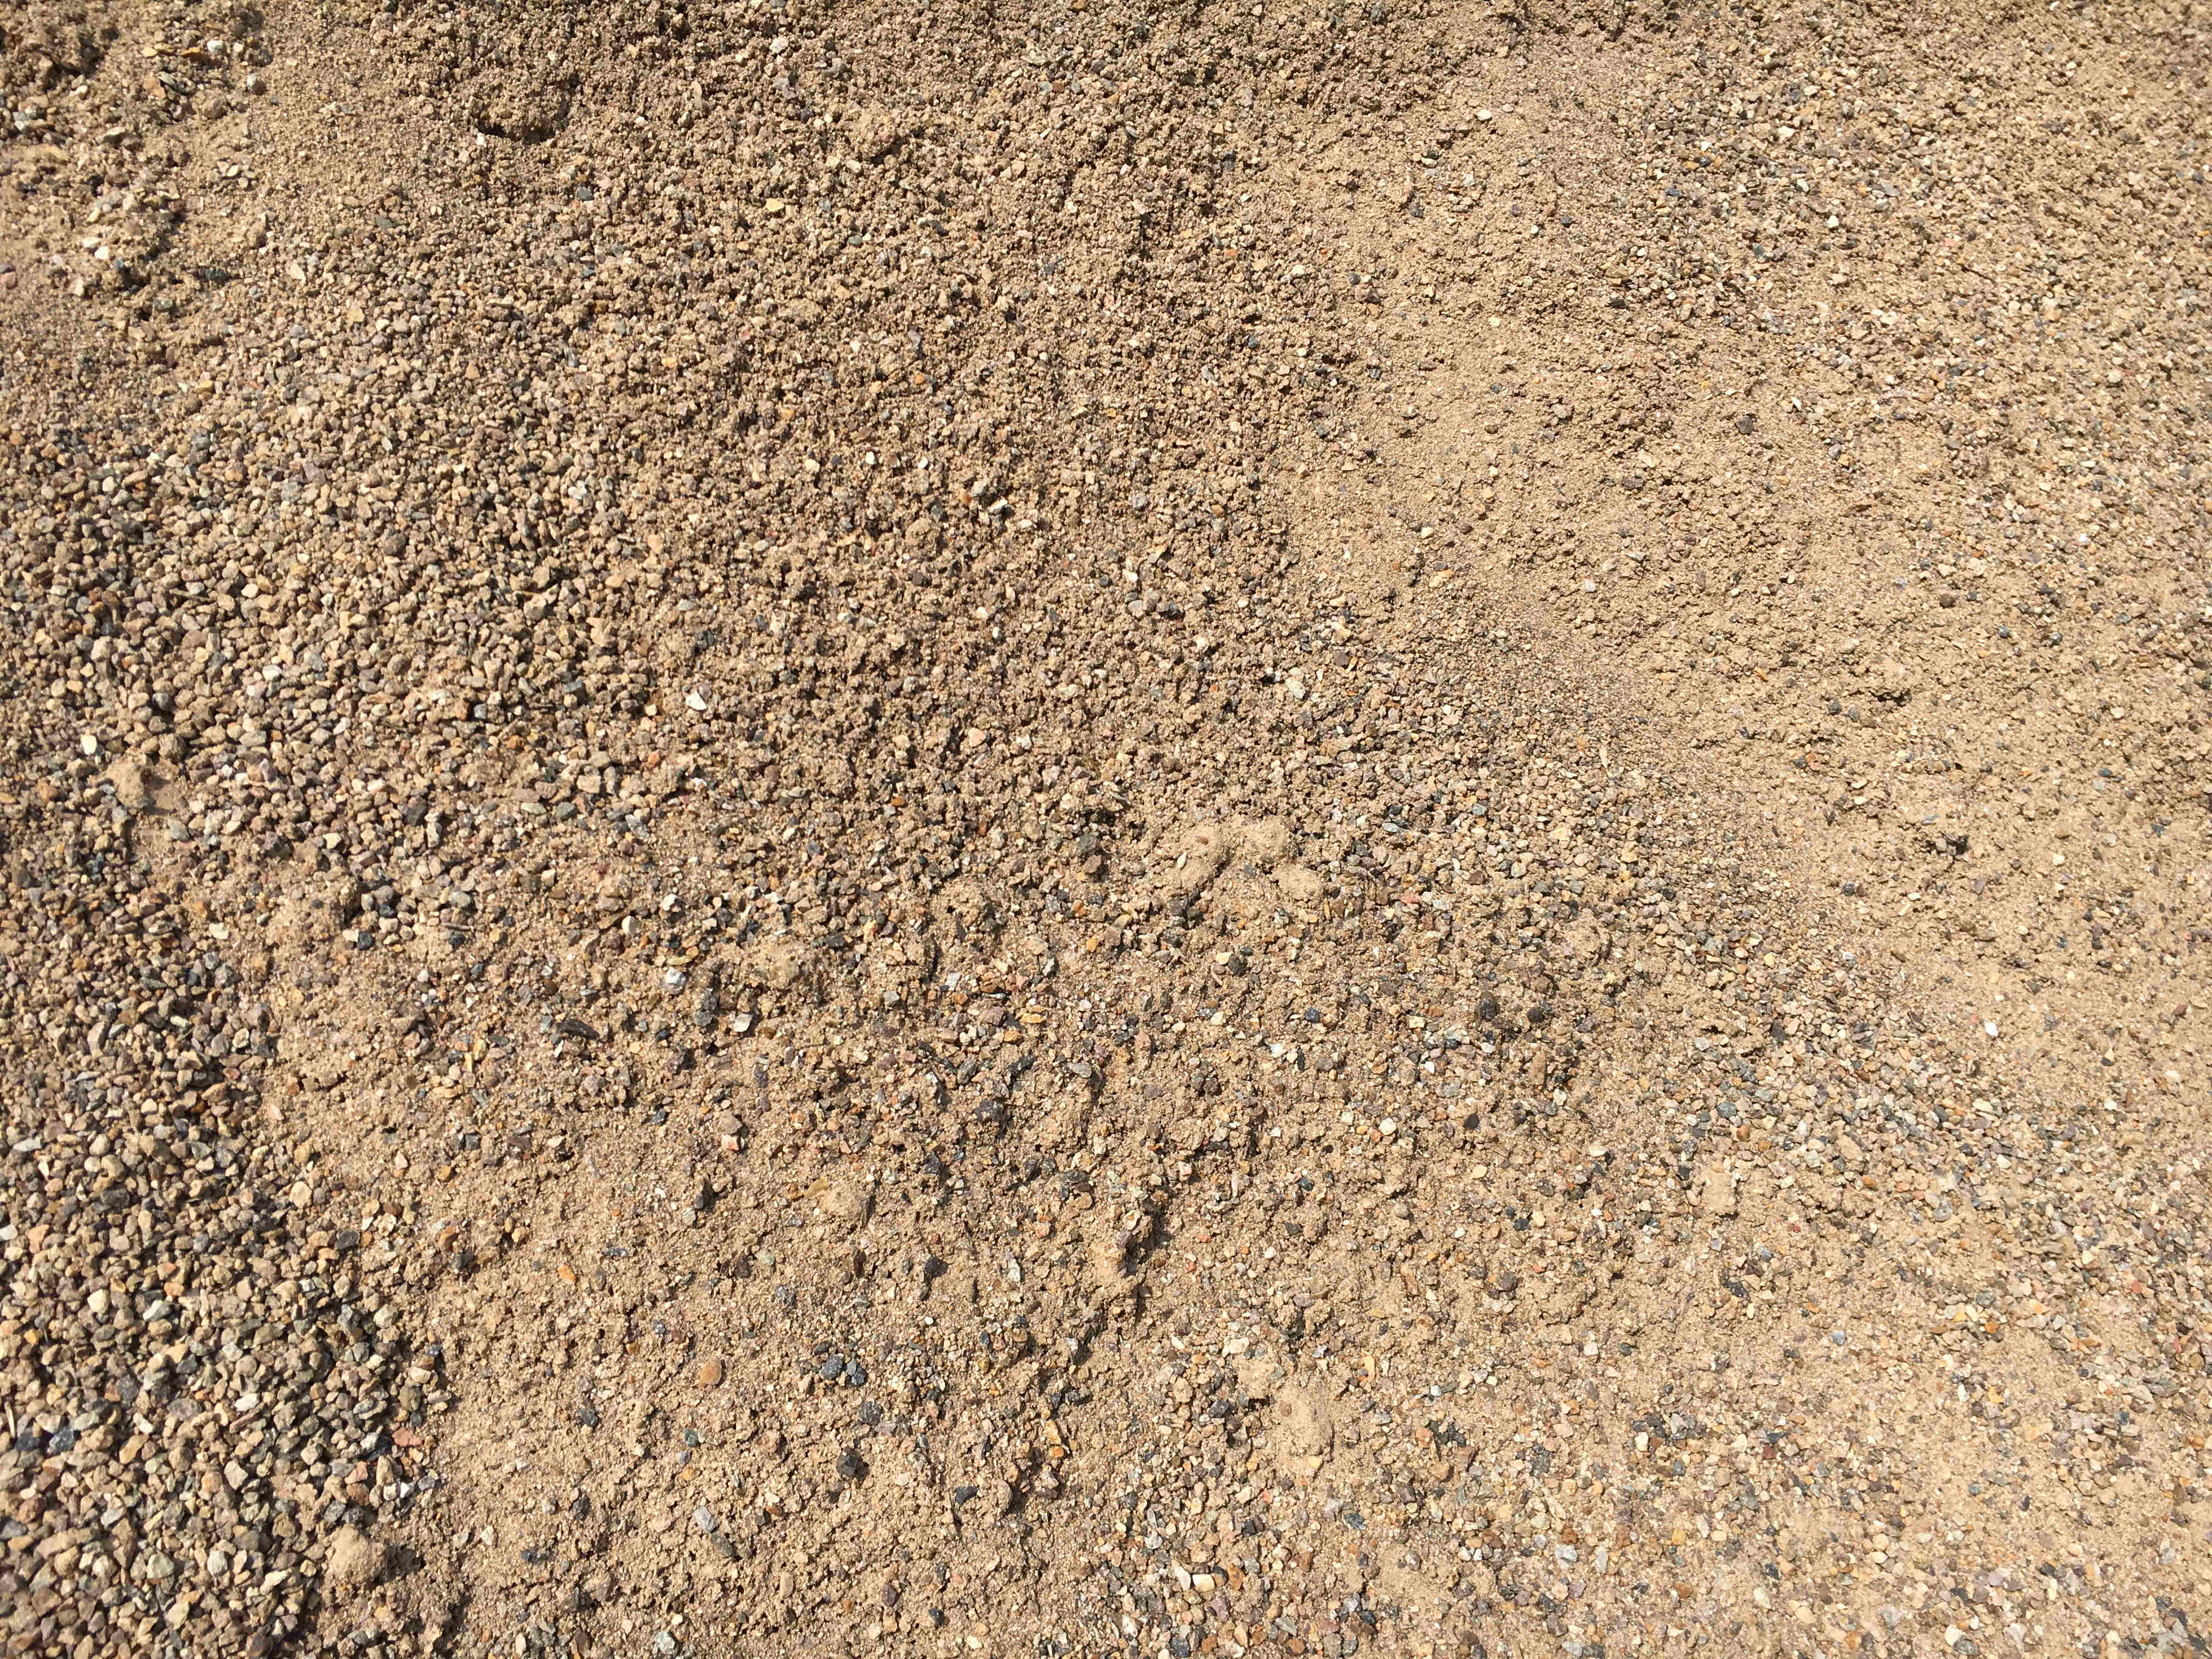 【砂石开发|矿山整合】甘肃计划五大砂石开发基地 加速矿山重组整合